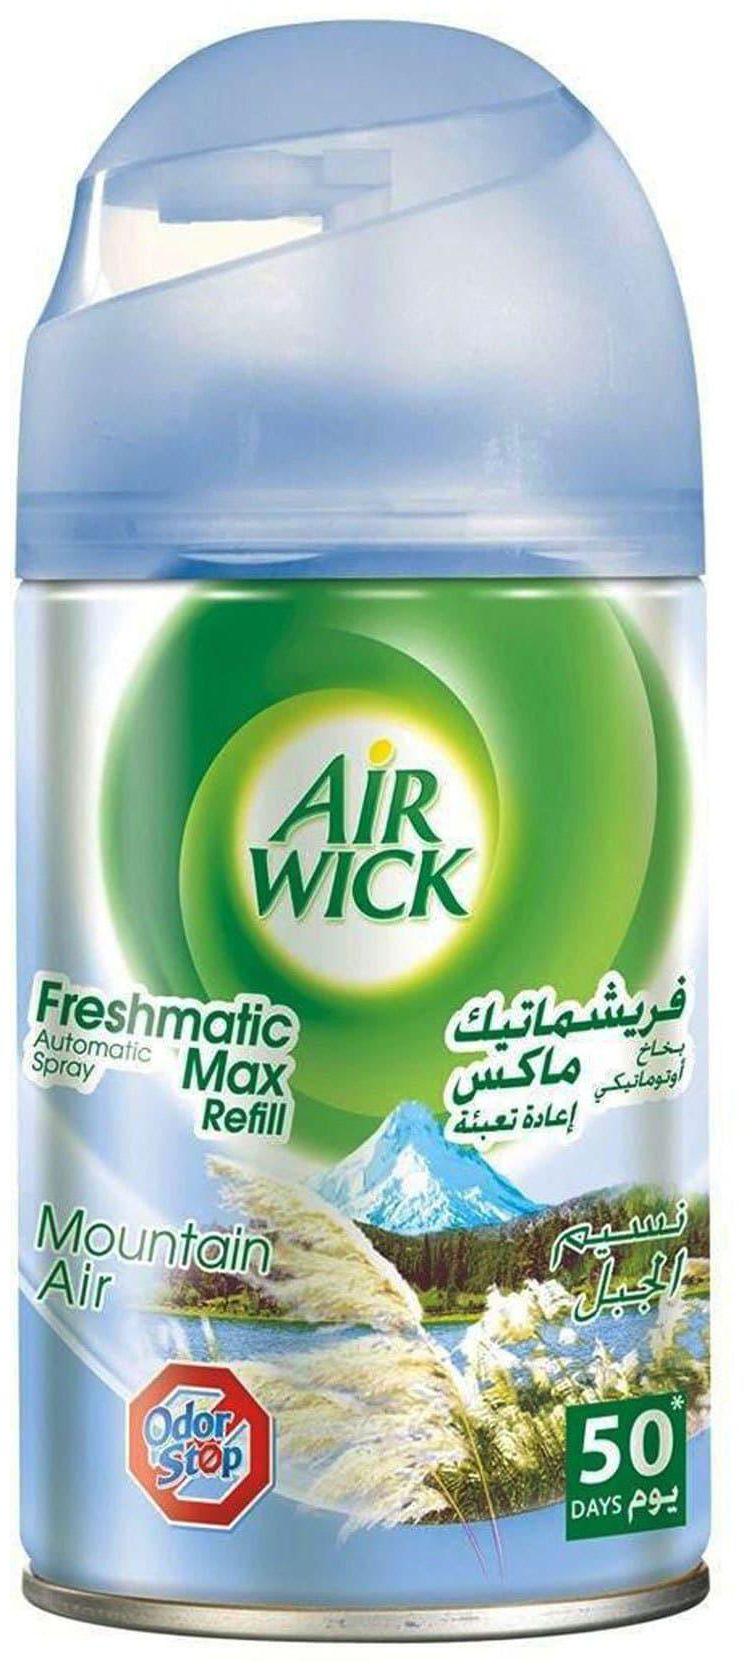 Air wick air freshener freshmatic max refill mountain air 250 ml